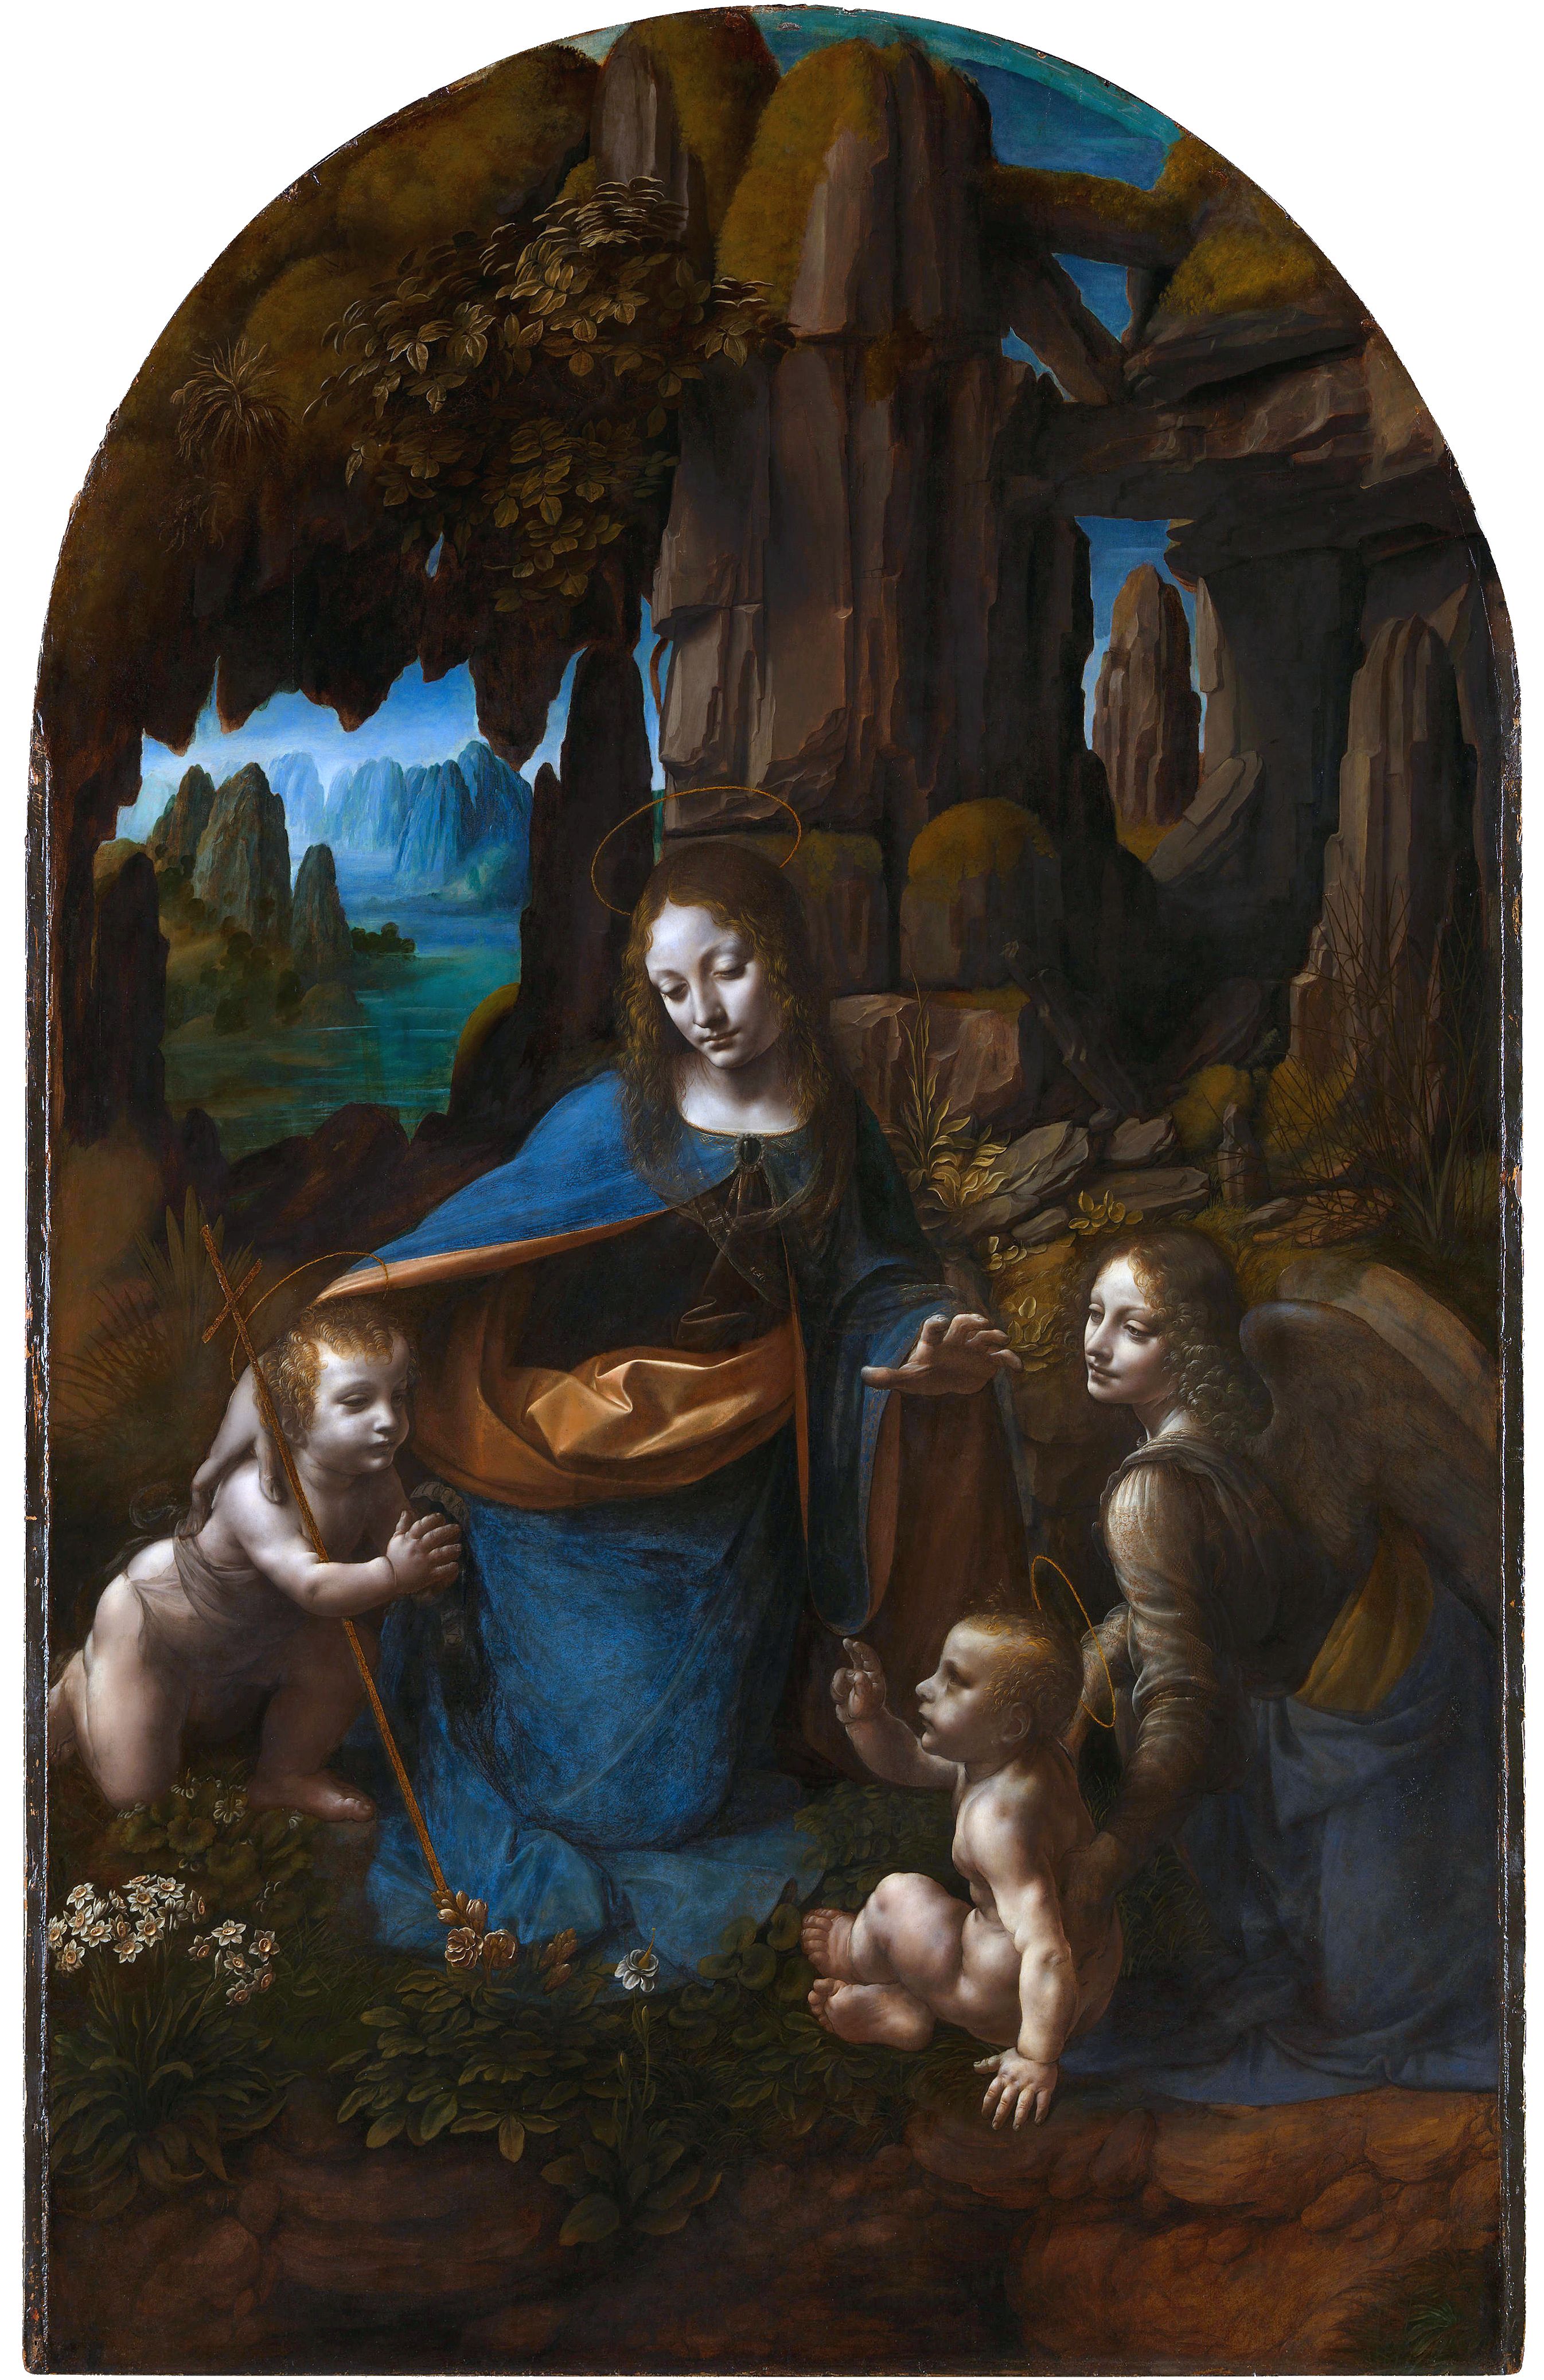 Leonardo da Vinci, Vergine delle rocce (1493-1501; olio su tavola, 189,5 x 120 cm; Londra, National Gallery)
